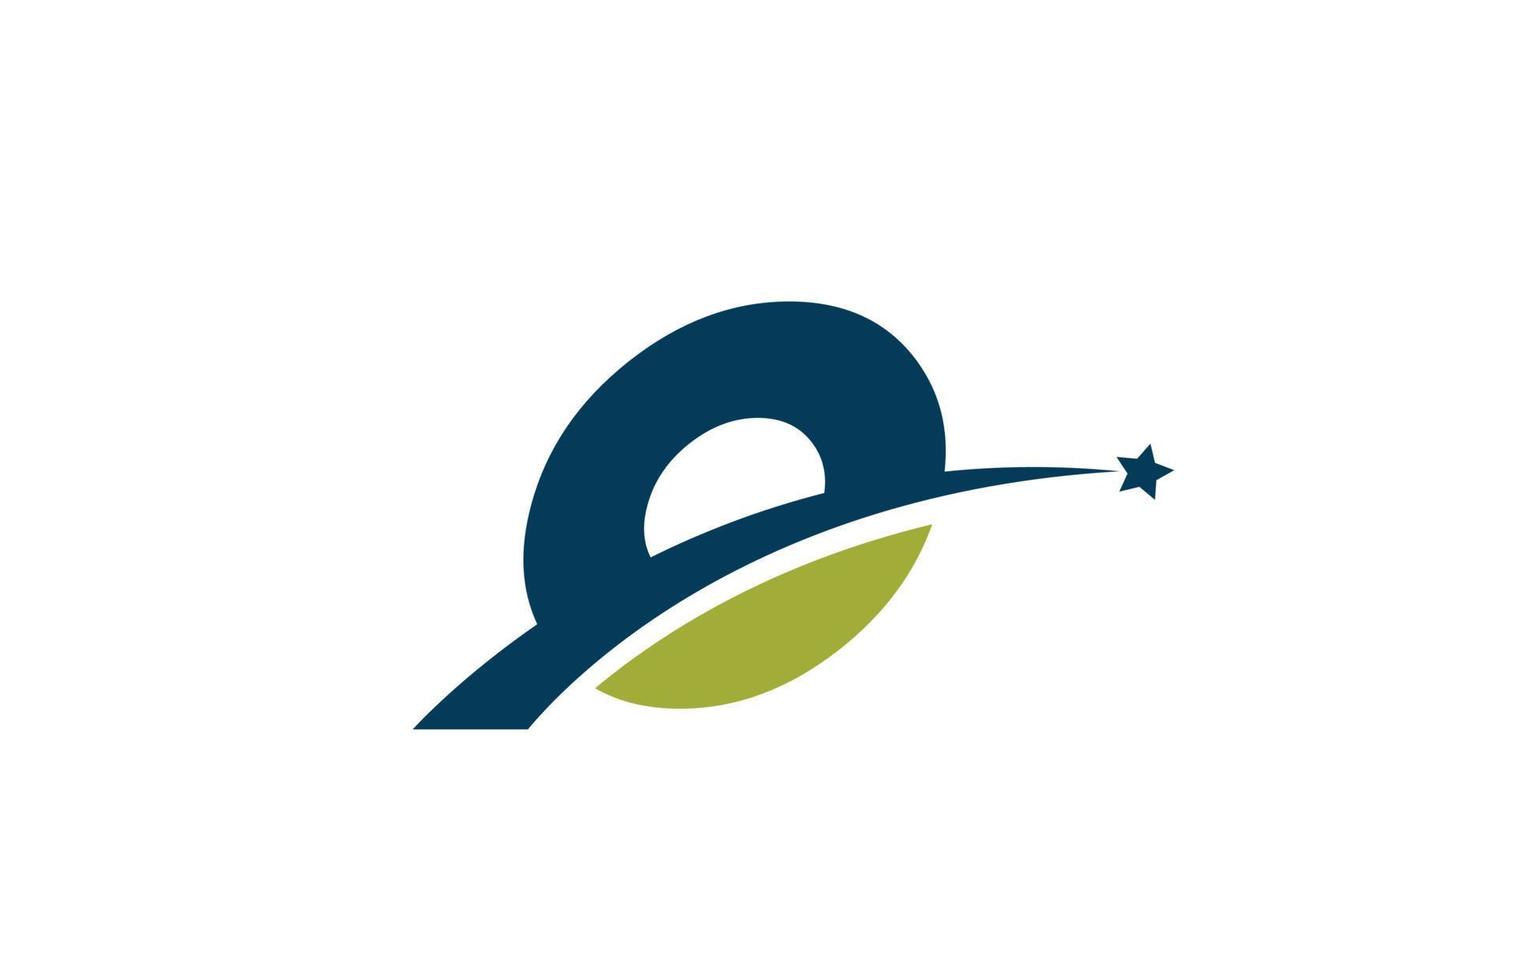 blauw groen o alfabet letterpictogram logo met ster. creatief ontwerp voor bedrijf of bedrijf met swoosh vector